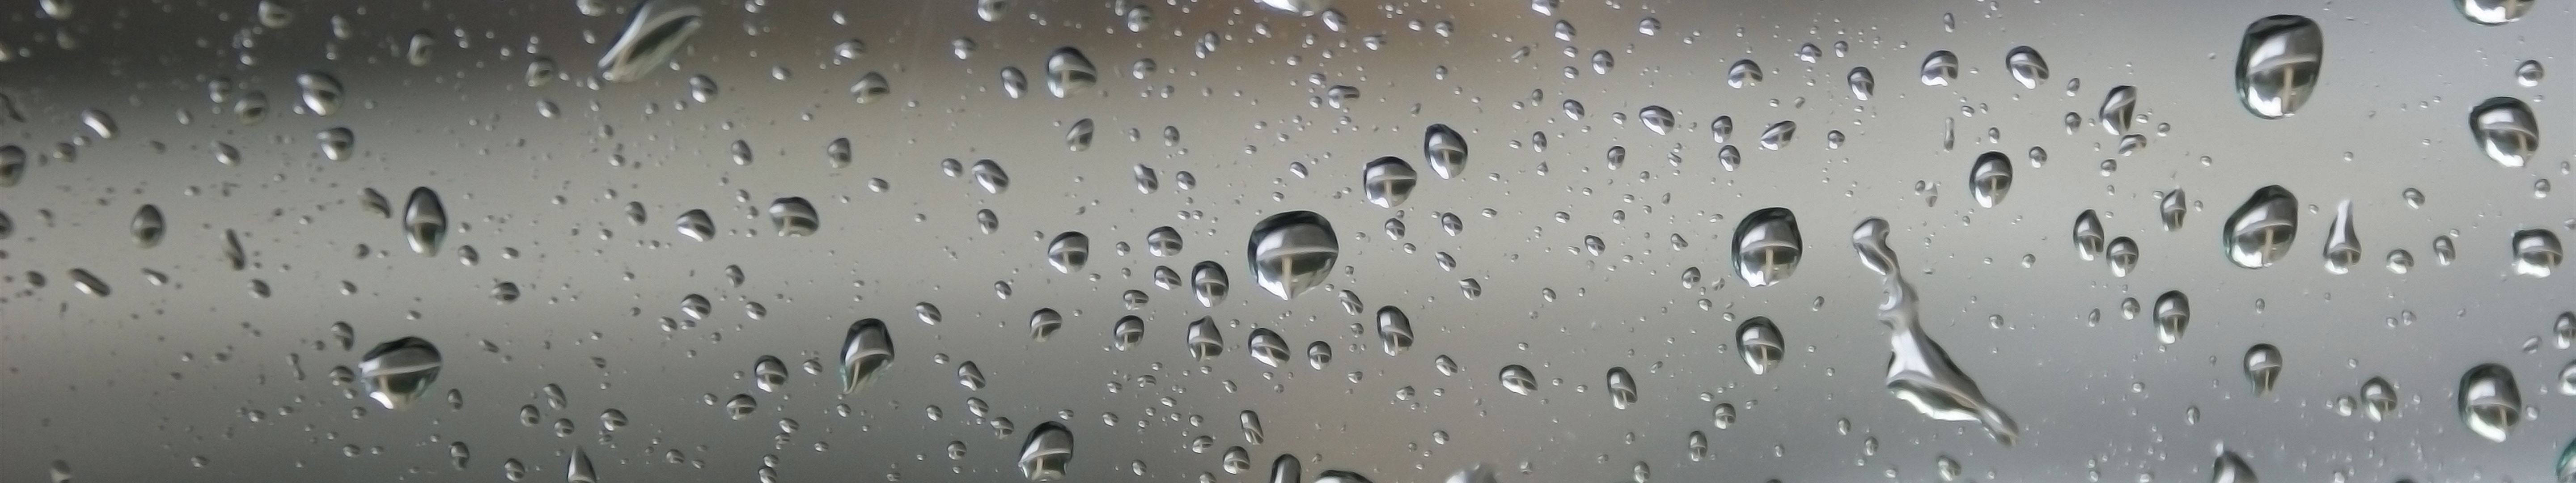 3 Monitor Dew Drops